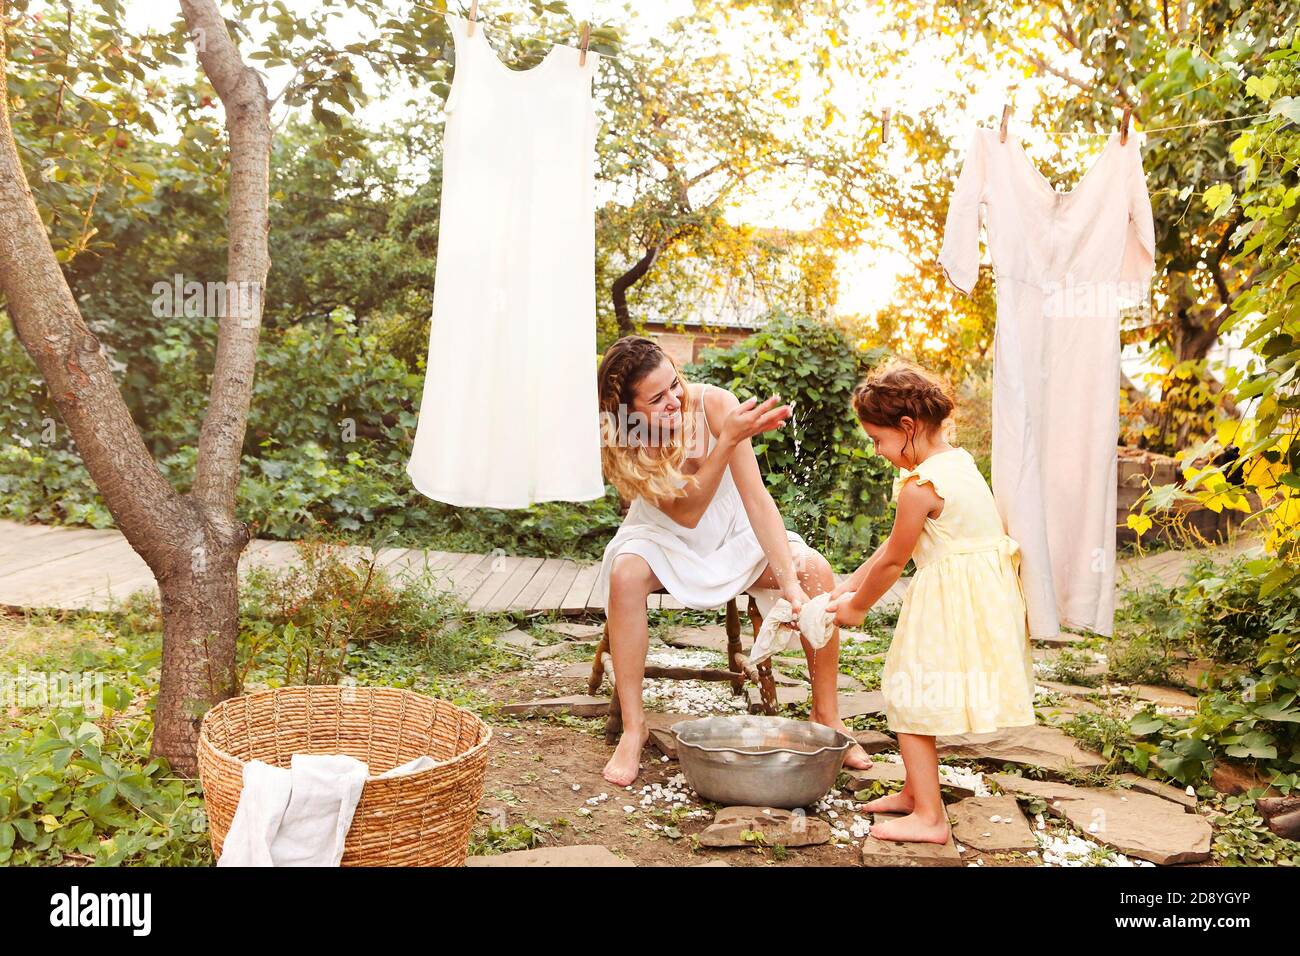 Charming kleines Mädchen helfen Mutter mit Weidenkorb während der Arbeit Chore und hängende Wäsche im Hinterhof im Sommer Abend Stockfoto